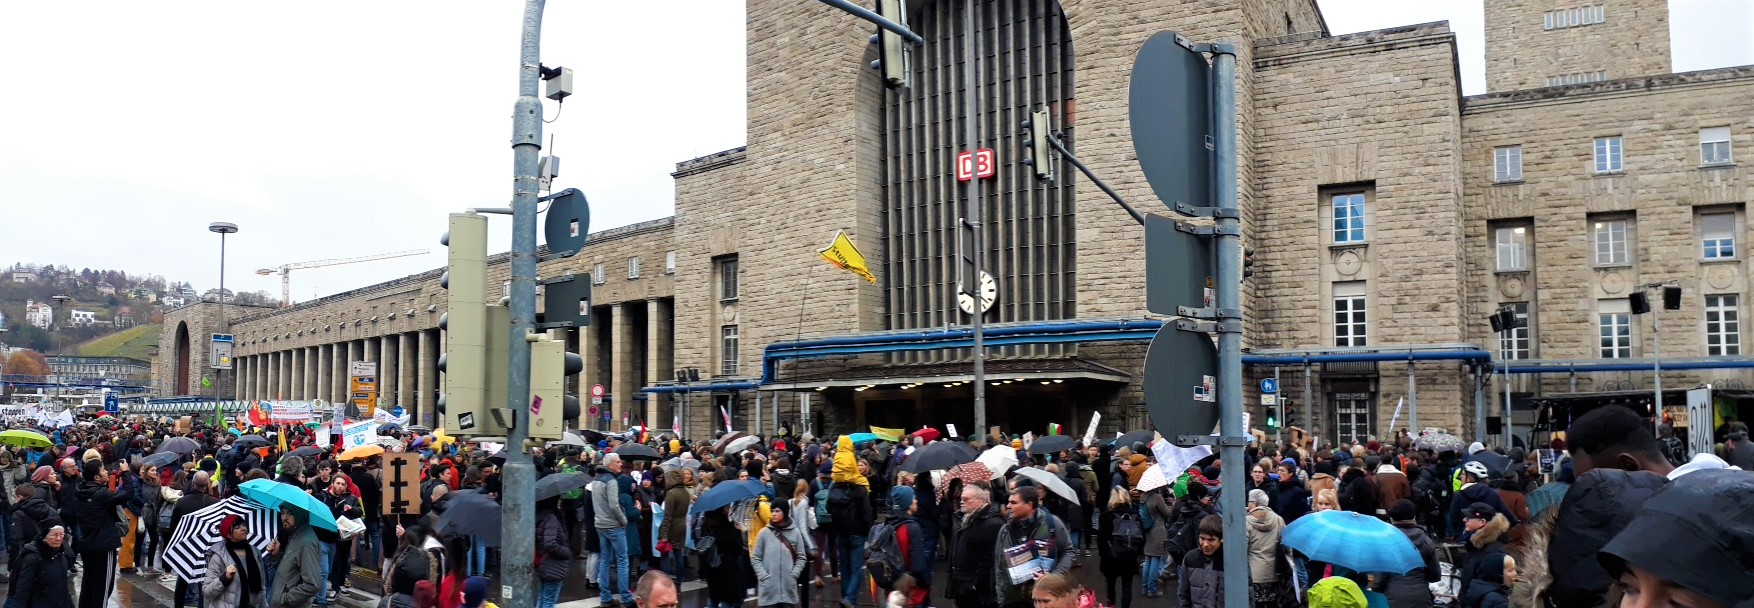 Viele Menschen sind auf einer Demo vor dem Bahnhof